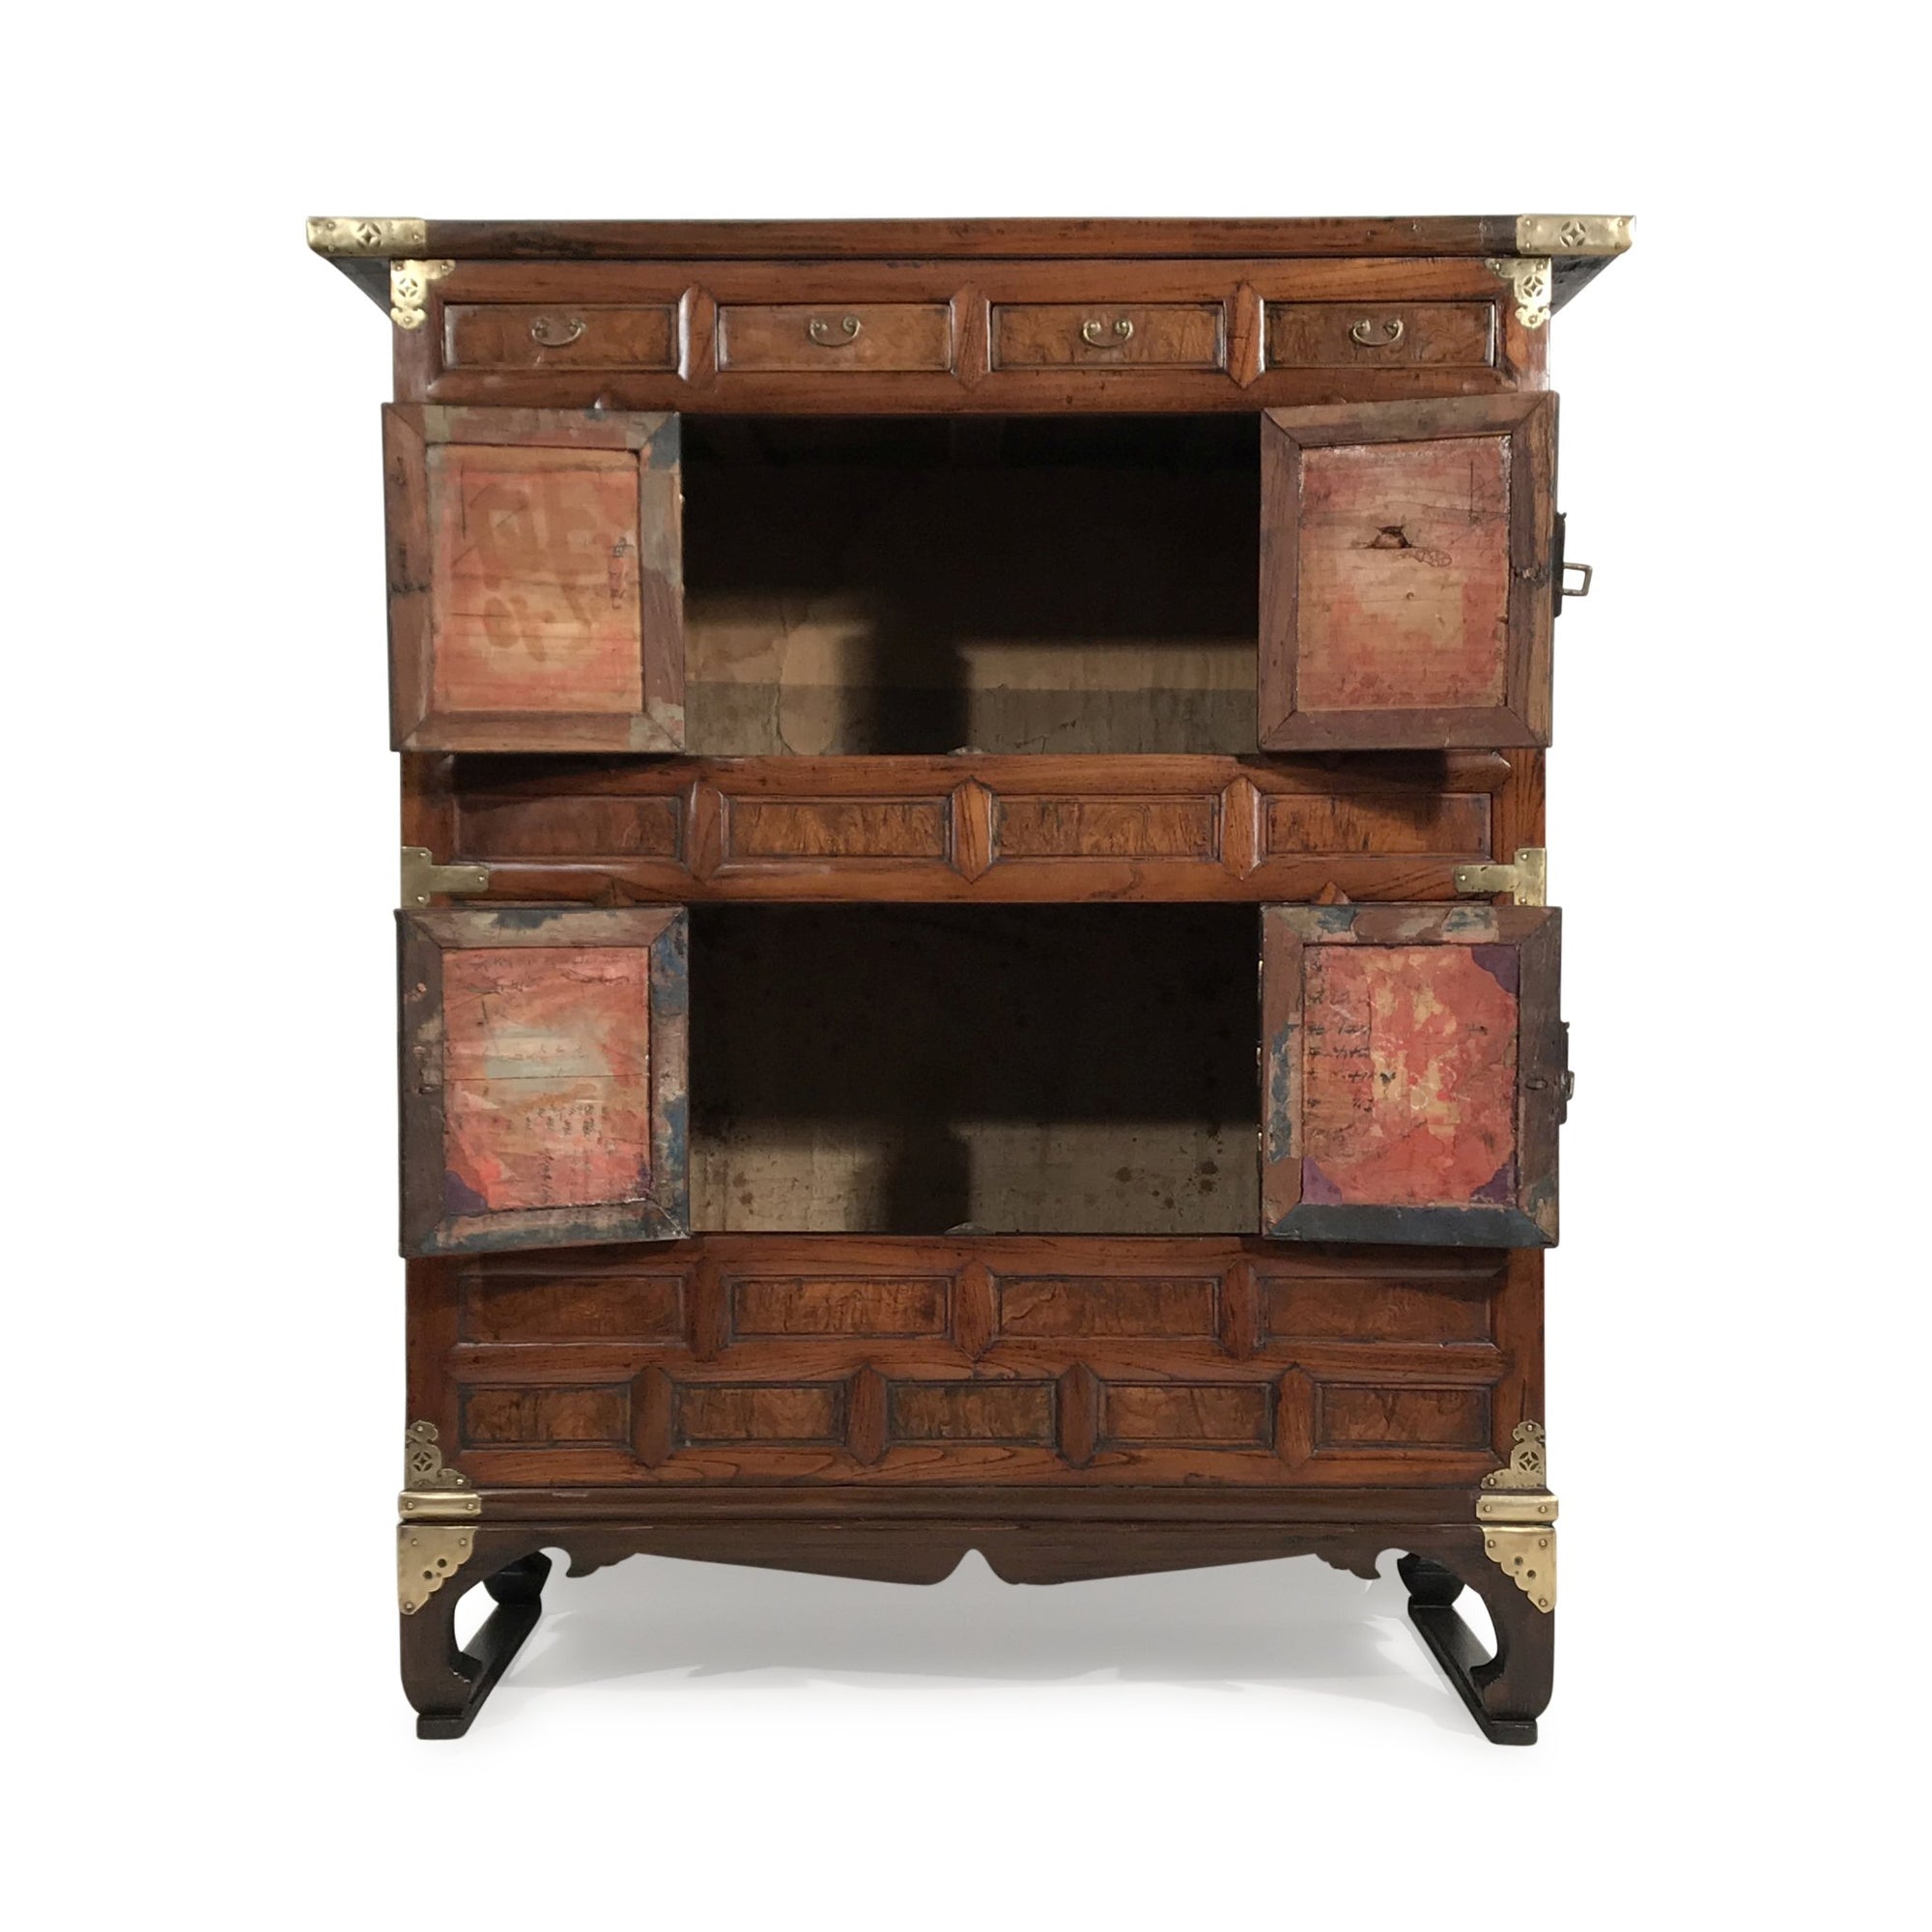 Burr Elm Cabinet From Korea - 19th Century | Indigo Oriental Antiques